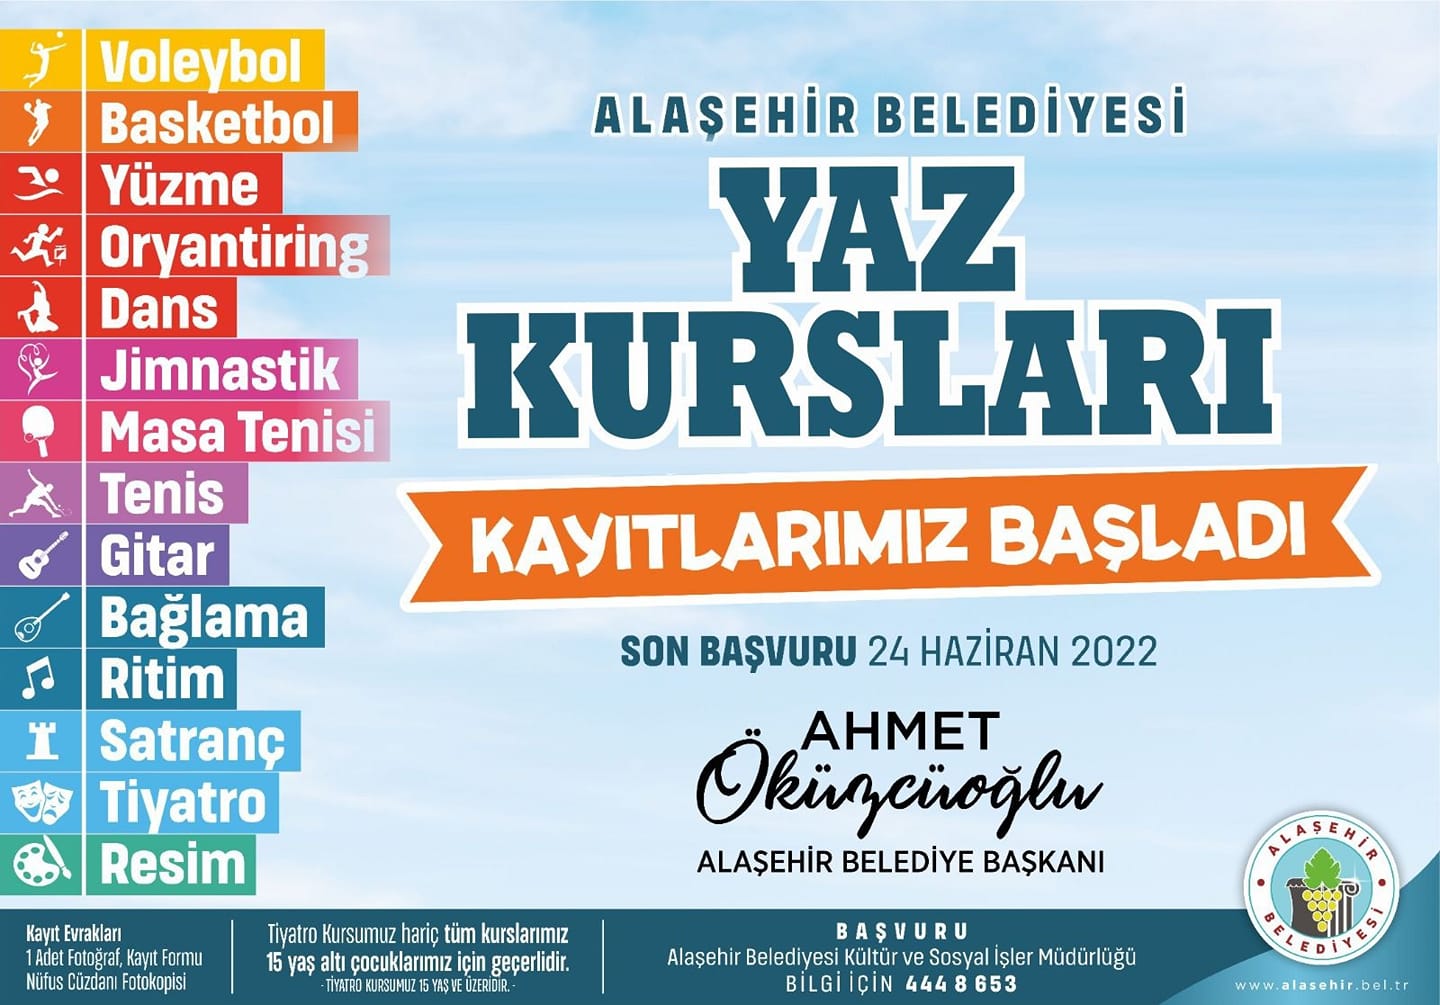 Alaşehir Belediyesi 2022 Yaz Kursları Kayıtlarımız Başladı